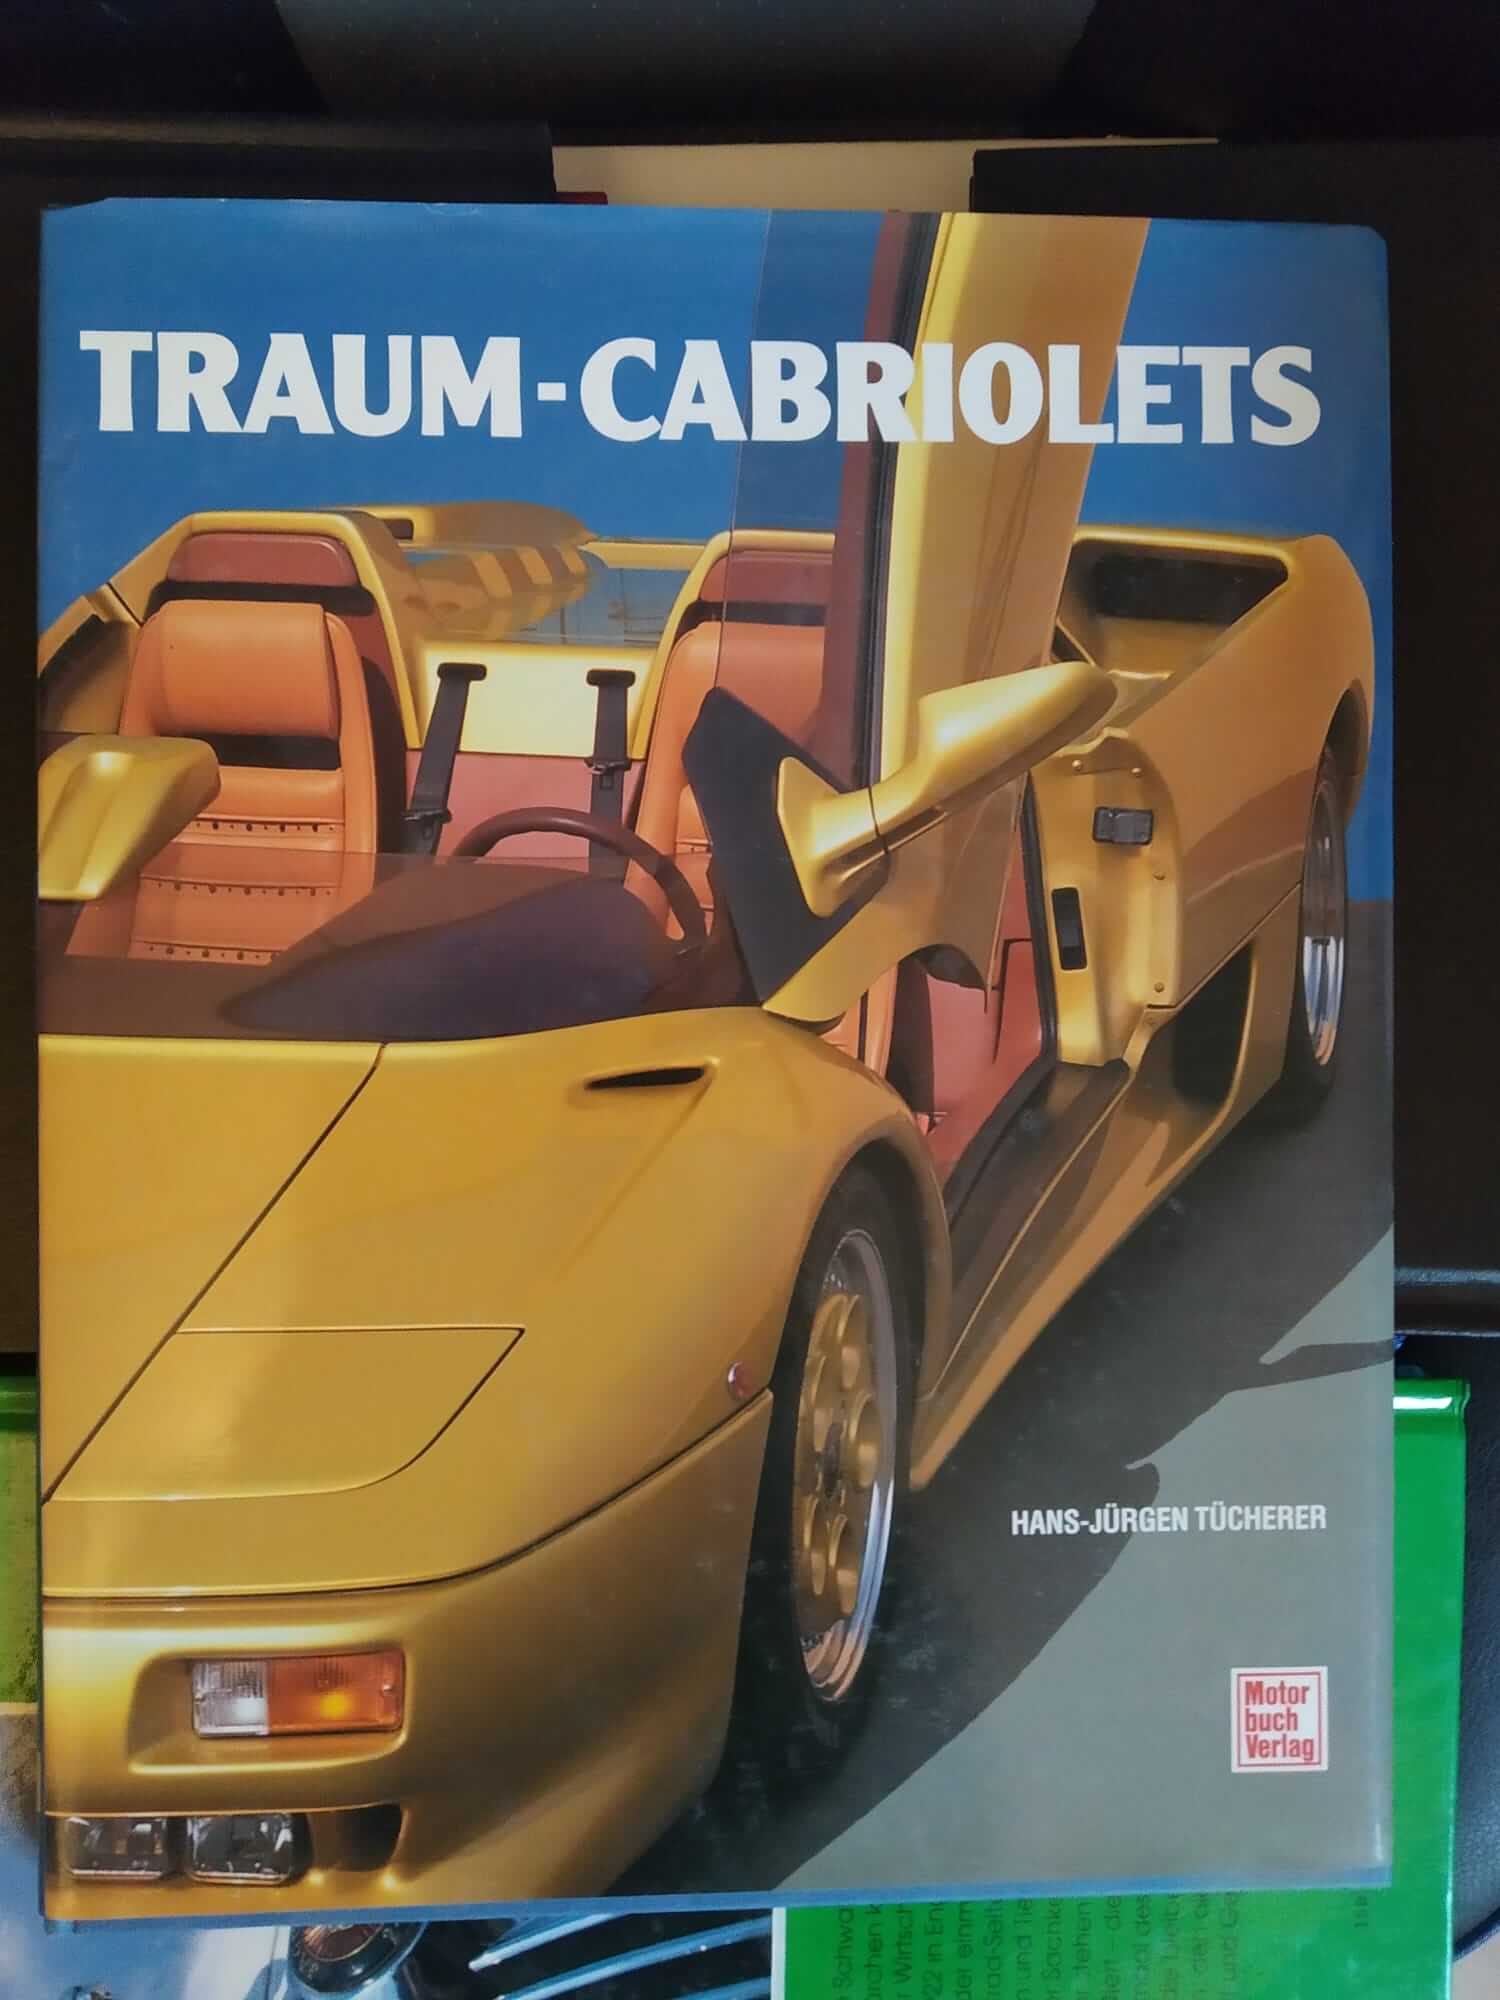 2 Bücher : Jaguar Auto Legende und Traum - Cabriolets - f5374045-8a89-4e83-9eda-febeeff05269